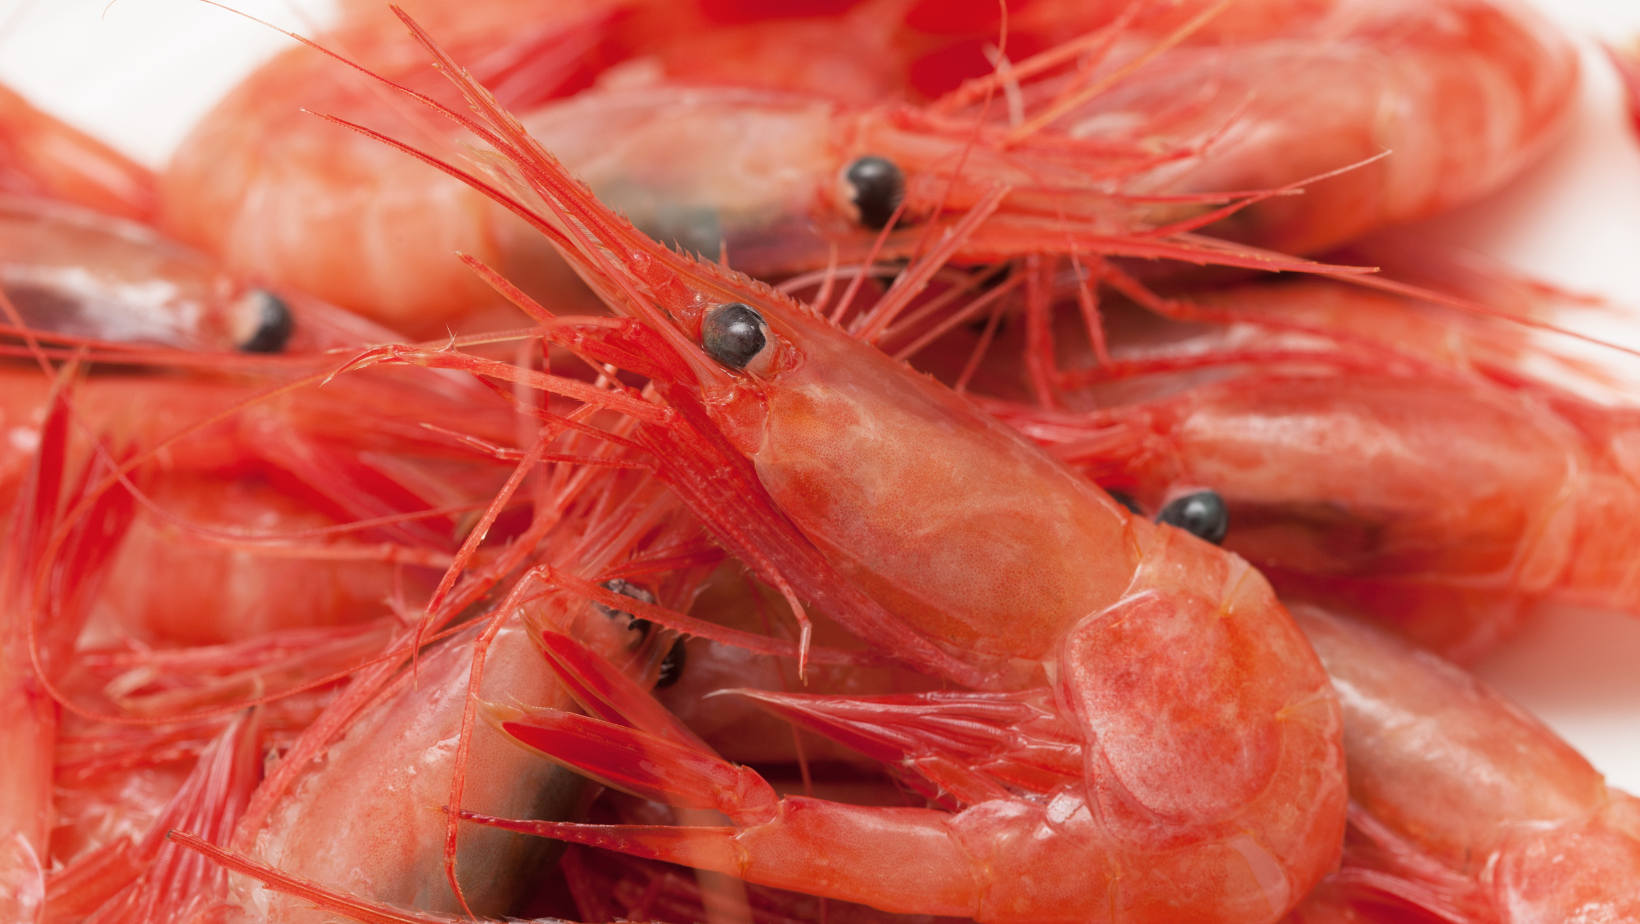 Vulnérabilité des populations de crevette nordique – constats et pistes de solutions